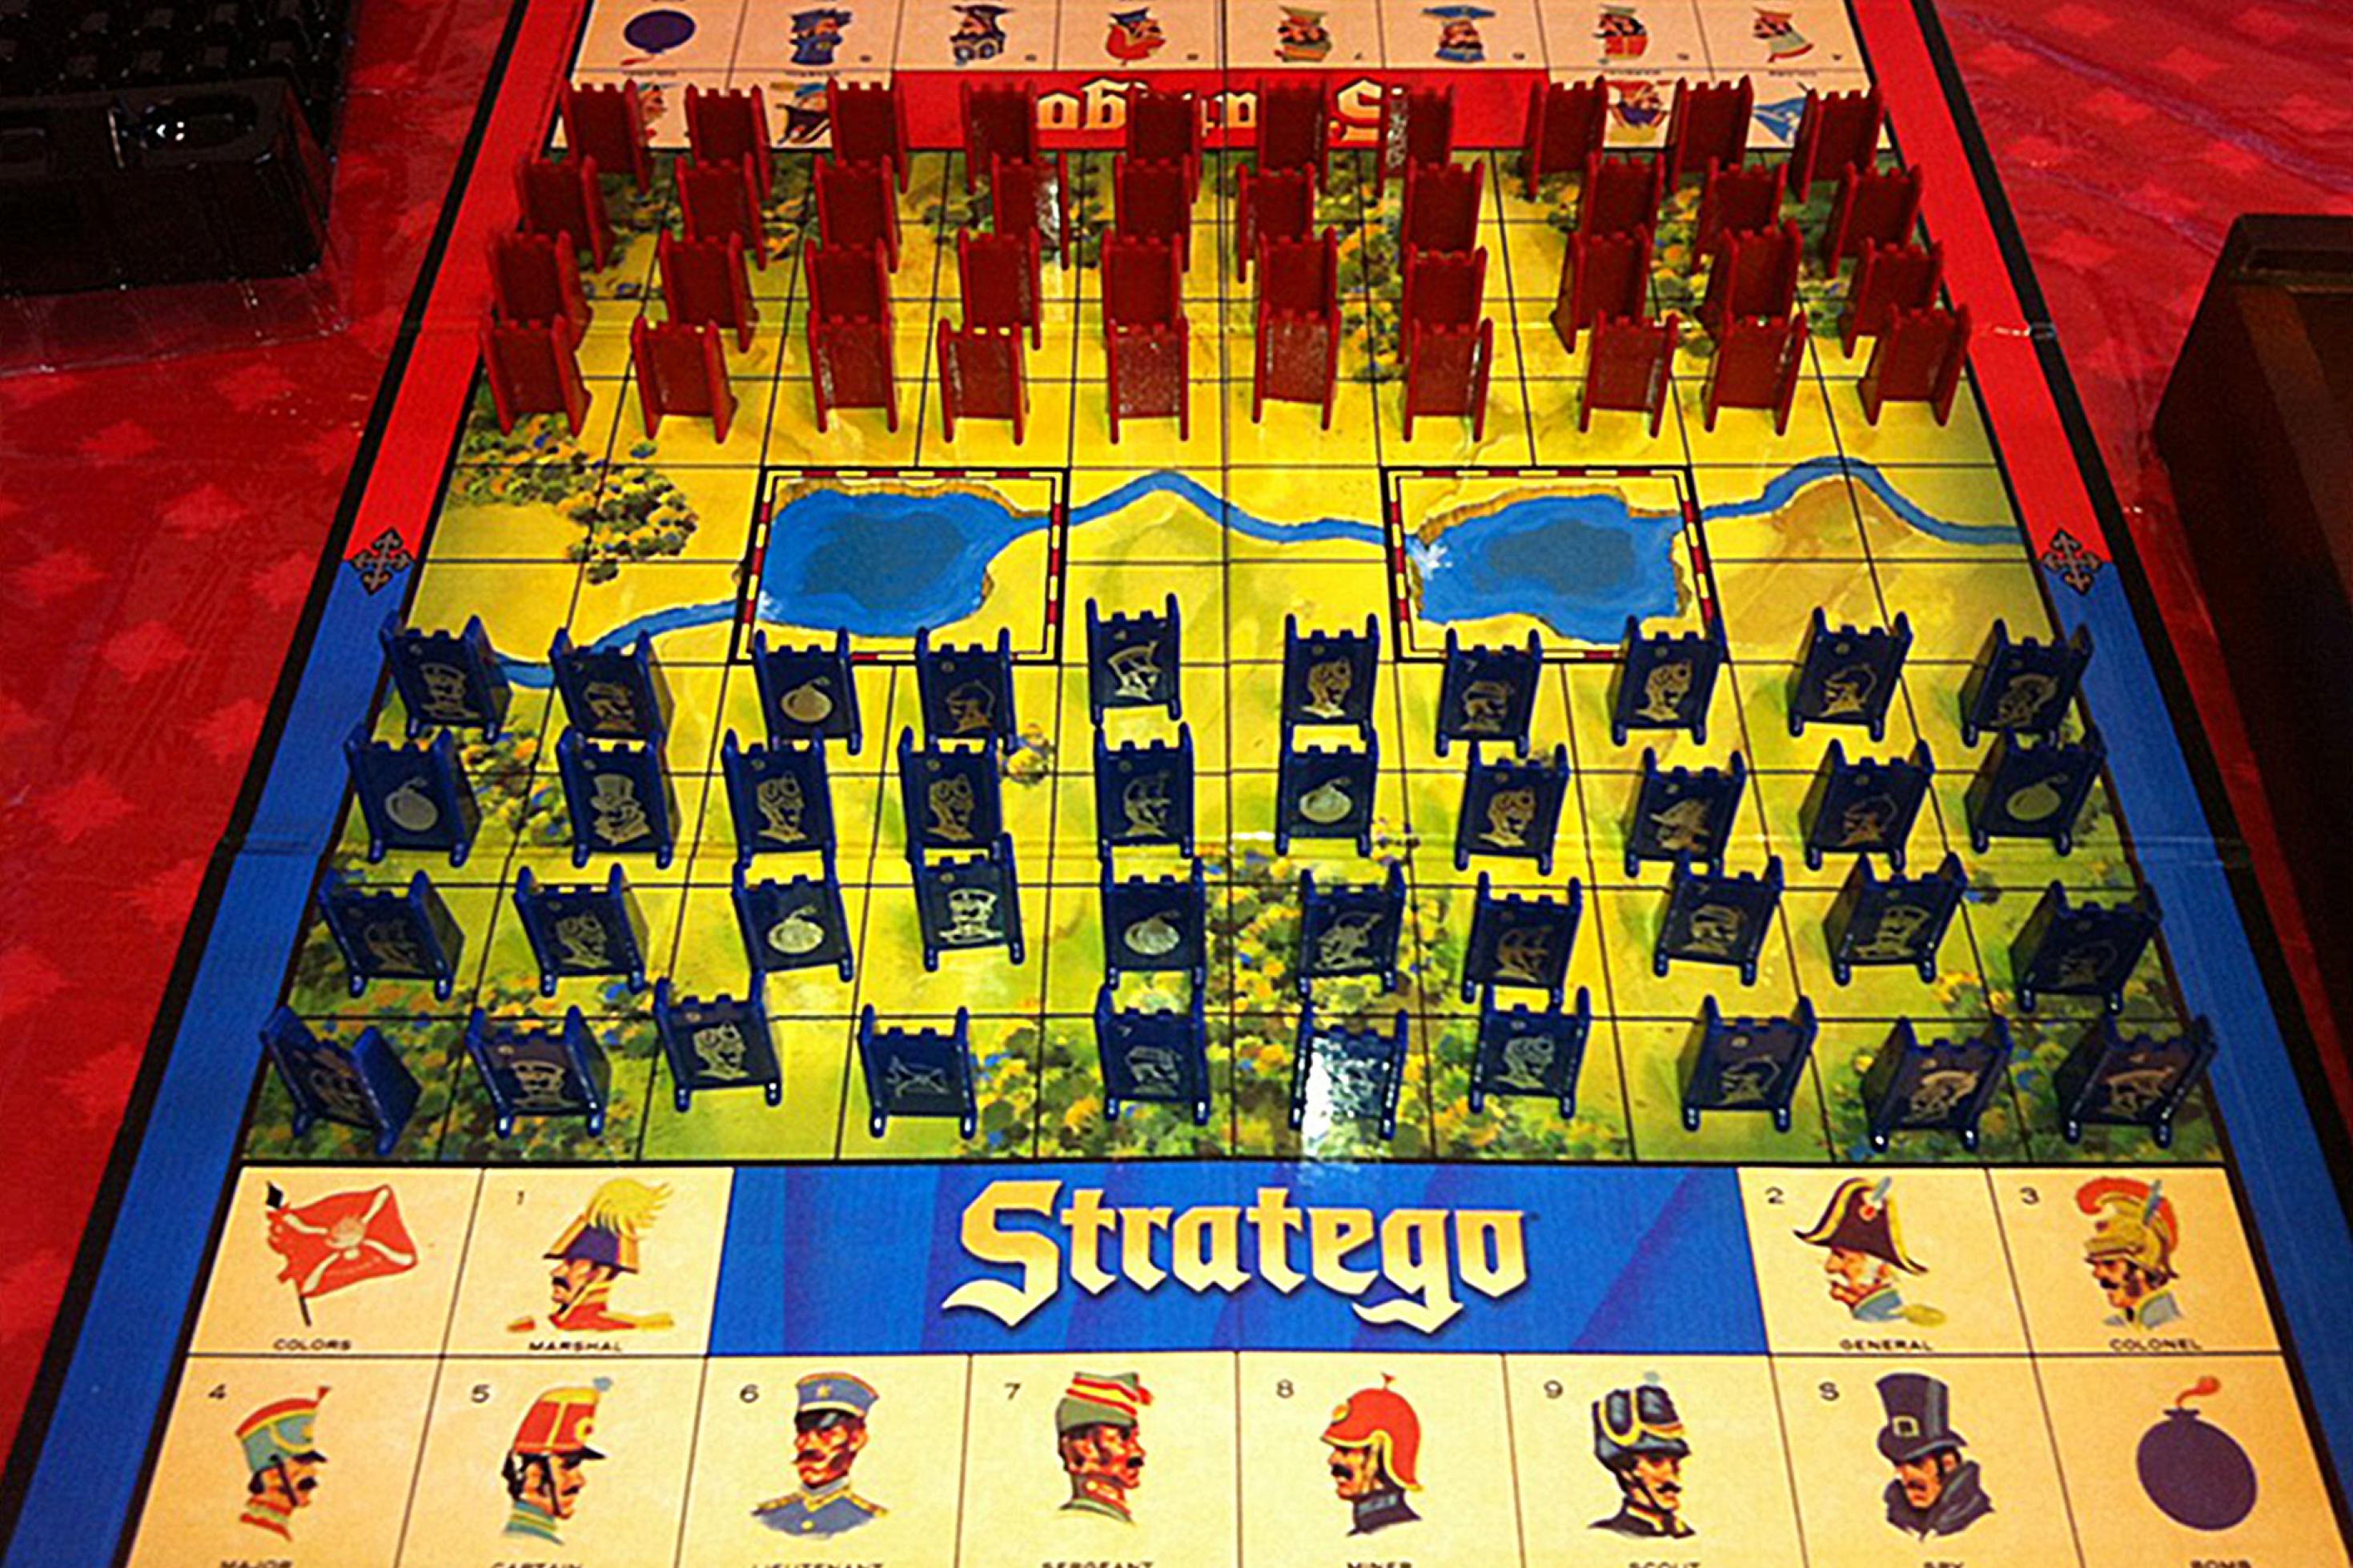 Das Brettspiel Stratego ist hochkomplex, weil es unfassbar viele Zugmöglichkeiten gibt und die Figuren noch dazu vor dem Gegner verborgen werden.